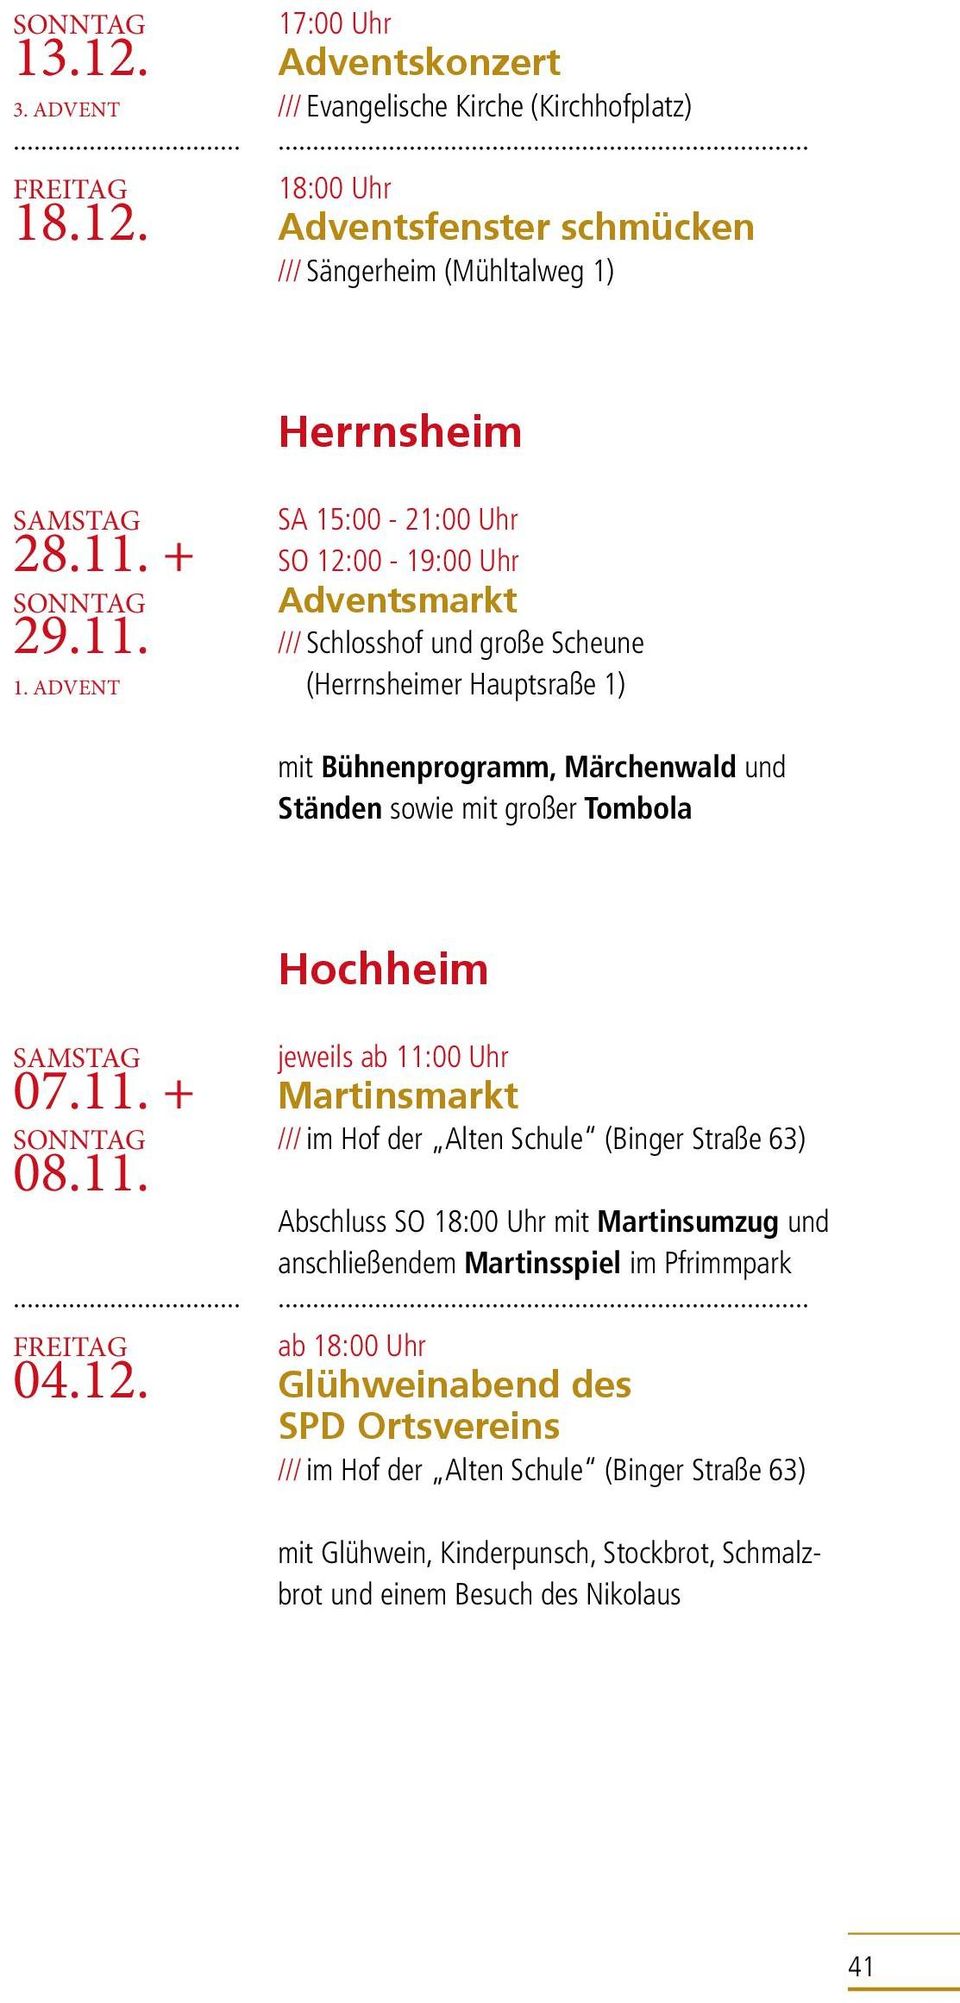 Tombola Hochheim 07.11. + 08.11. 04.12.